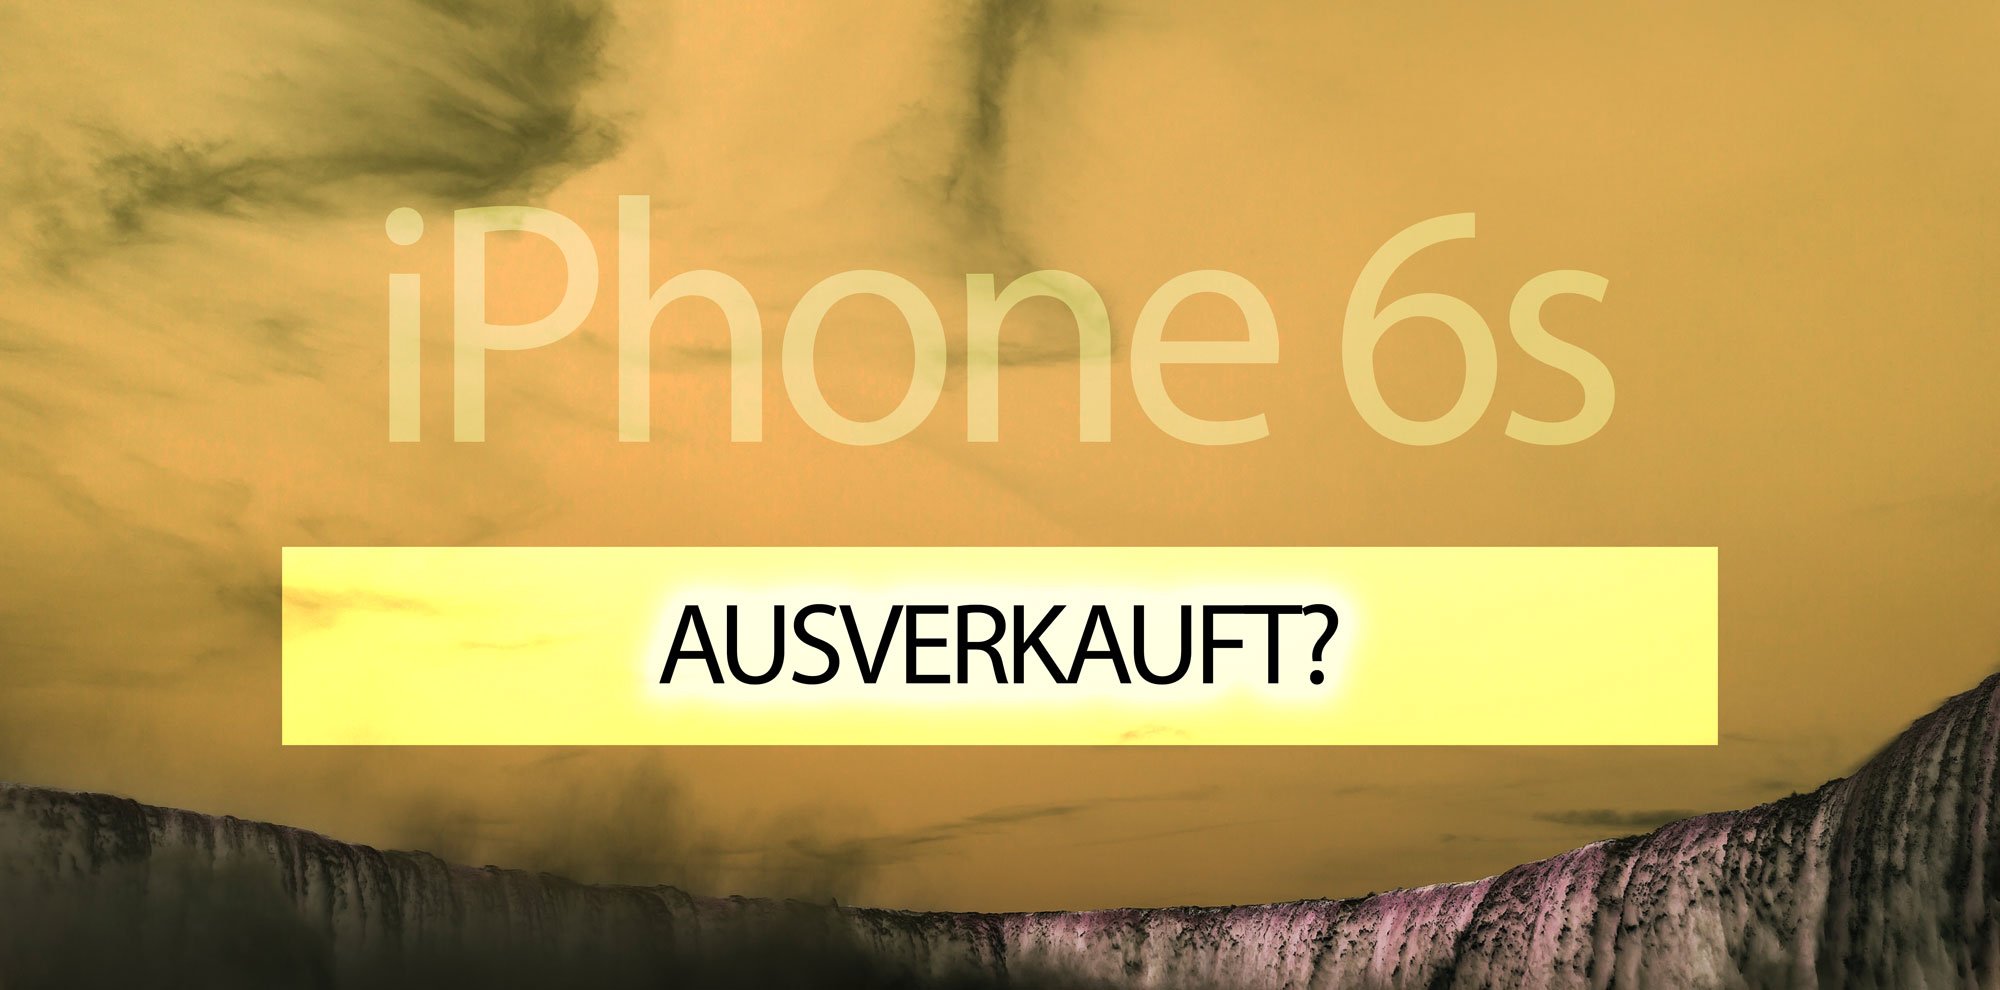 iPhone 6S Lieferzeiten: Liefertermine & schnellere Lieferung 2